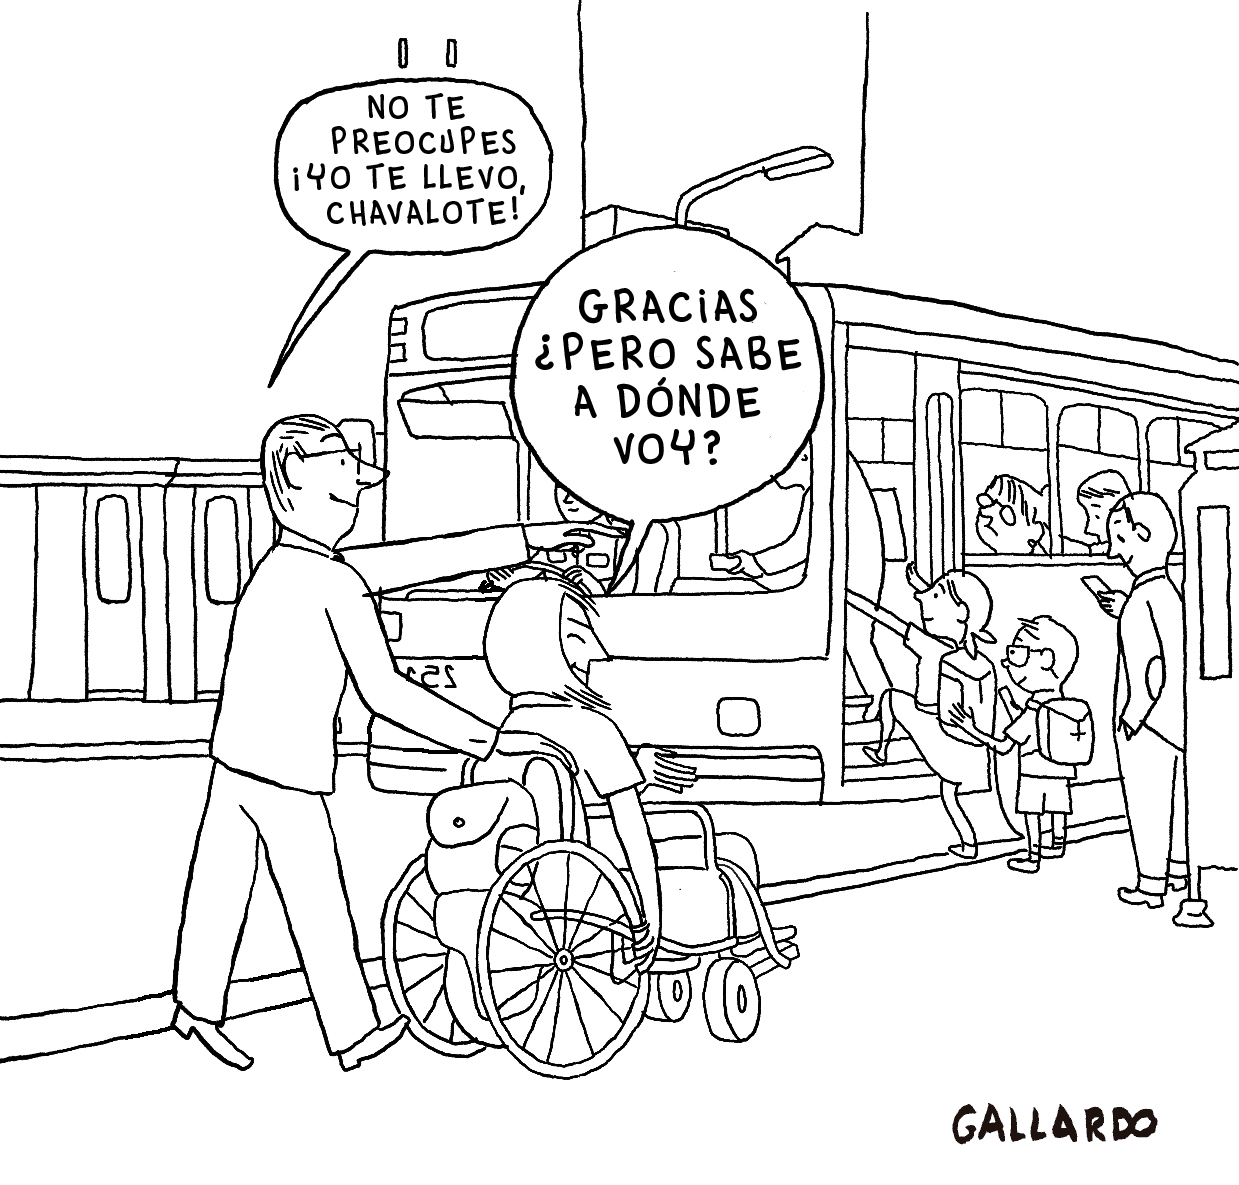 Viñeta de Miguel Gallardo en la que un hombre quiere ayudar a un chico en silla de ruedas llevándolo, pero sin preguntarle a dónde va.